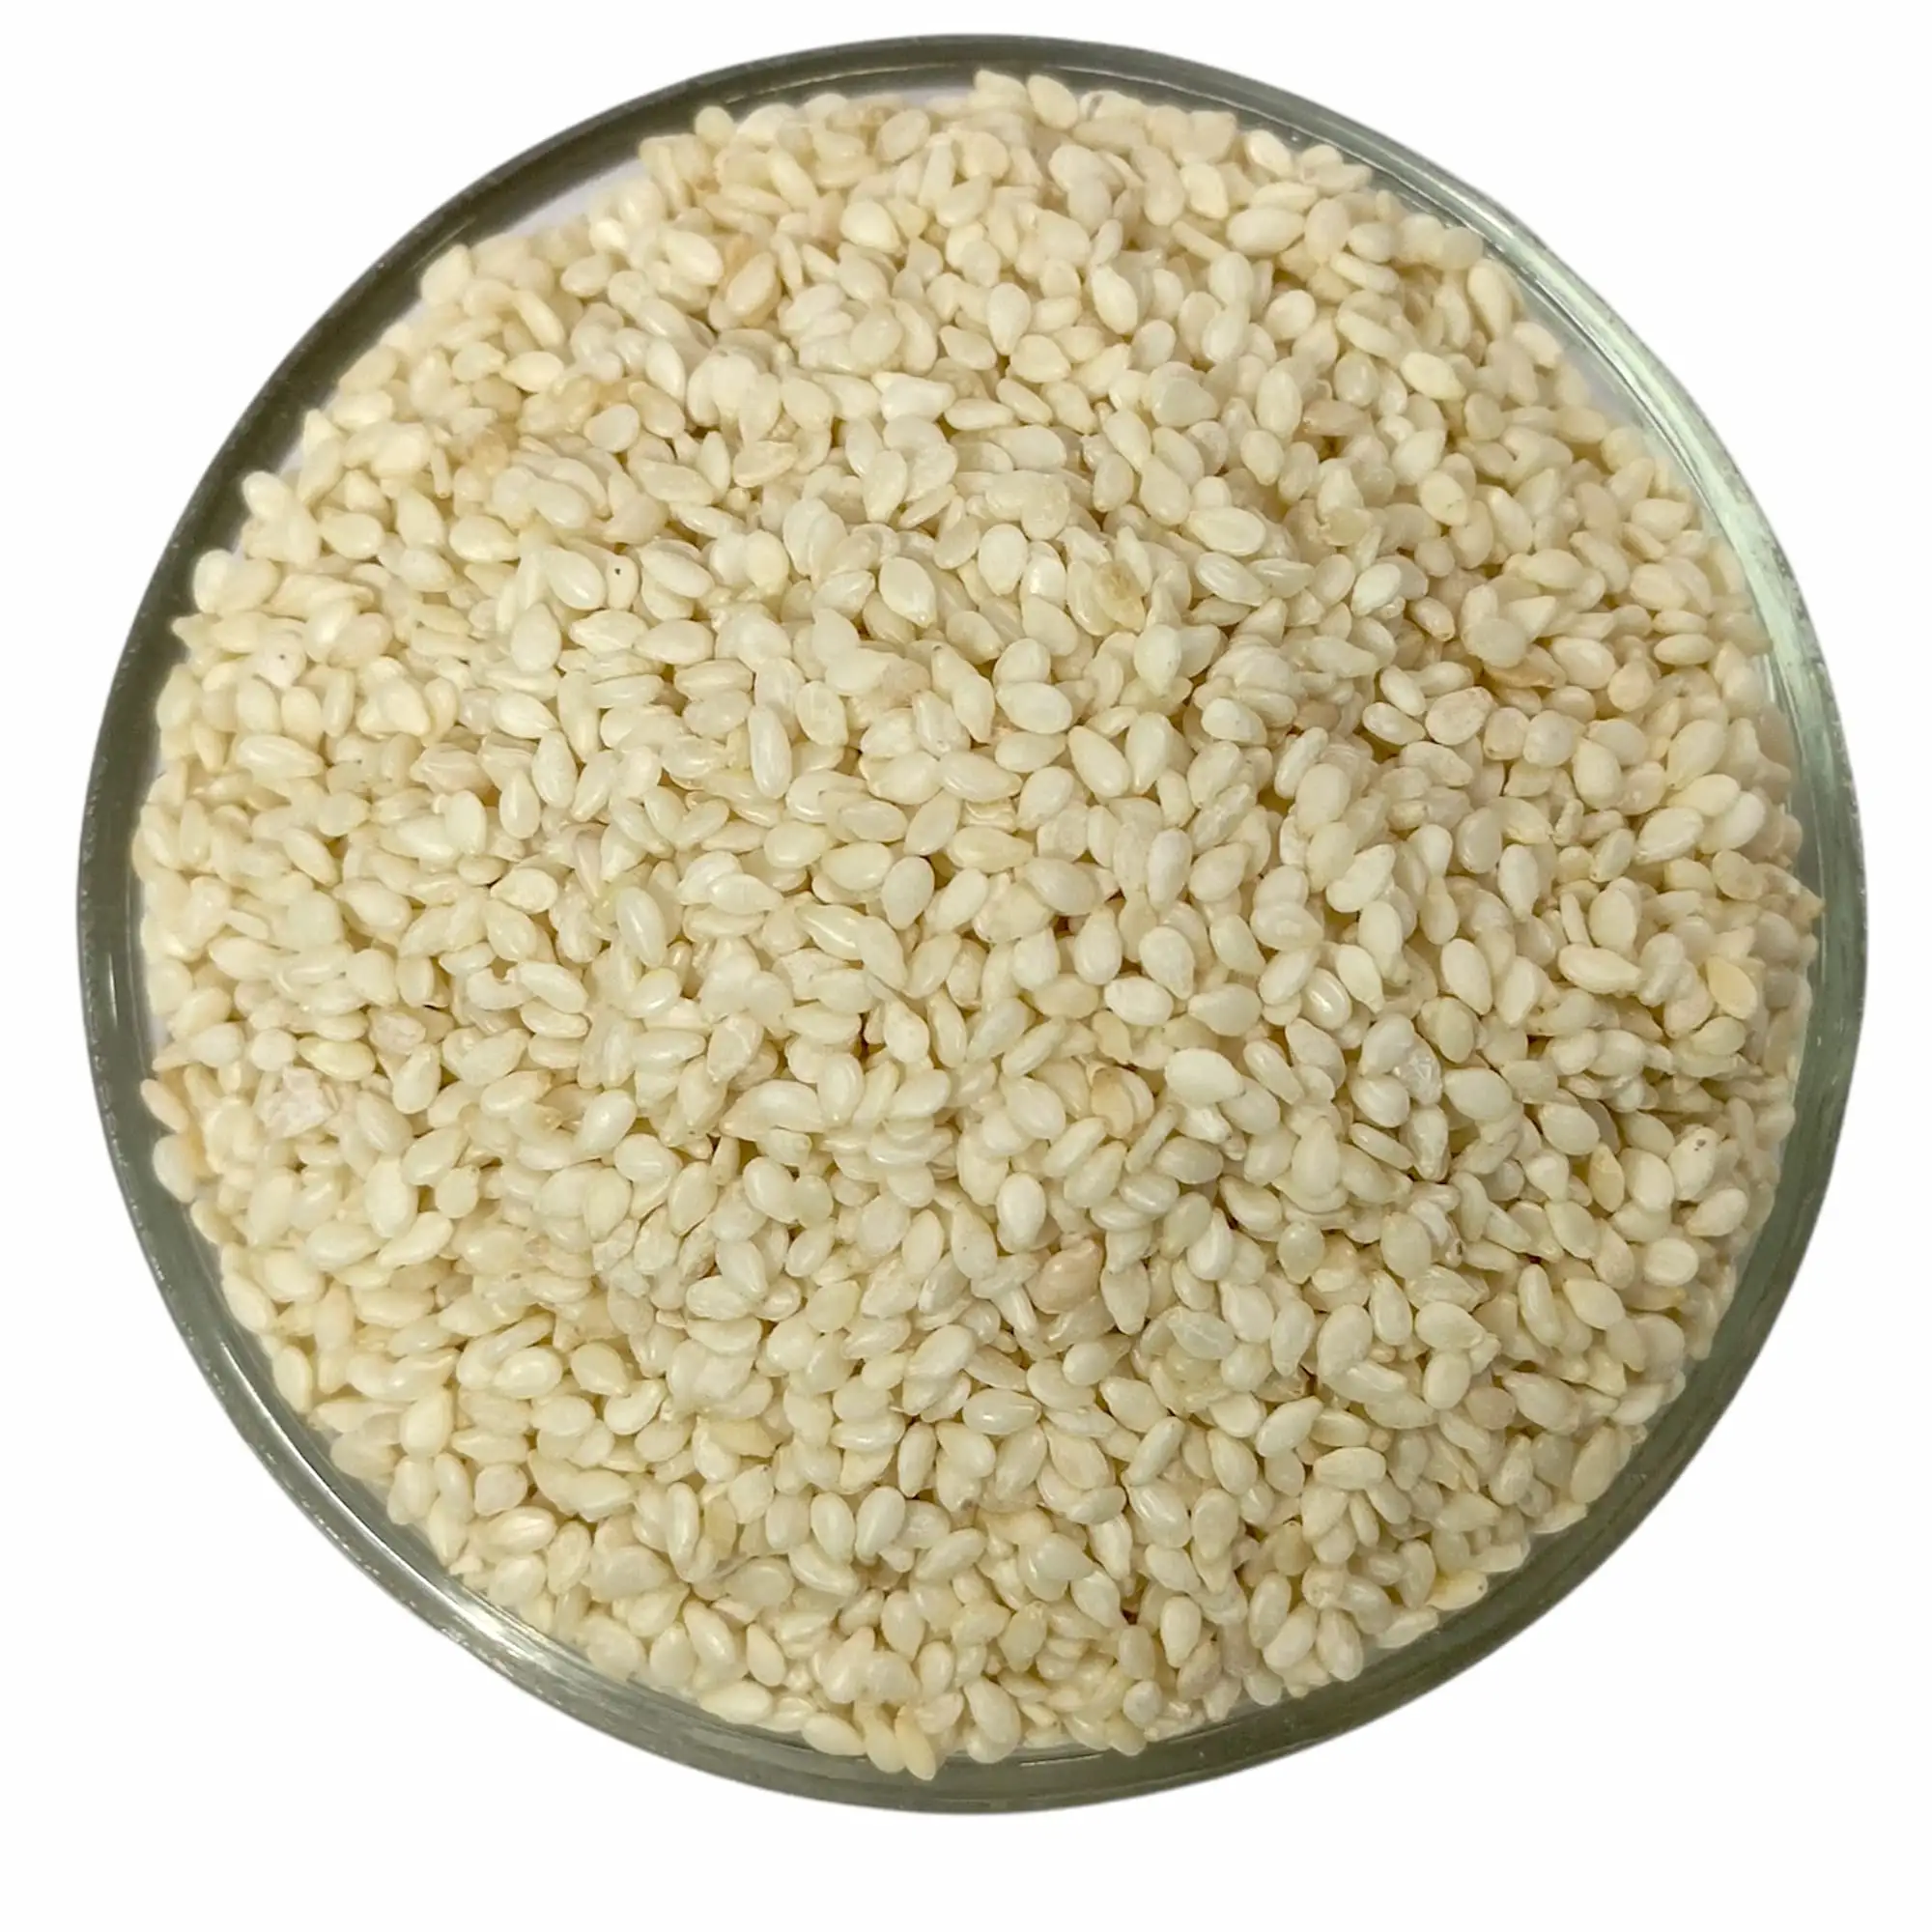 Las semillas de sésamo contienen una variedad de nutrientes saludables. Como una rica fuente de proteínas, son una gran adición de servicio OEM.